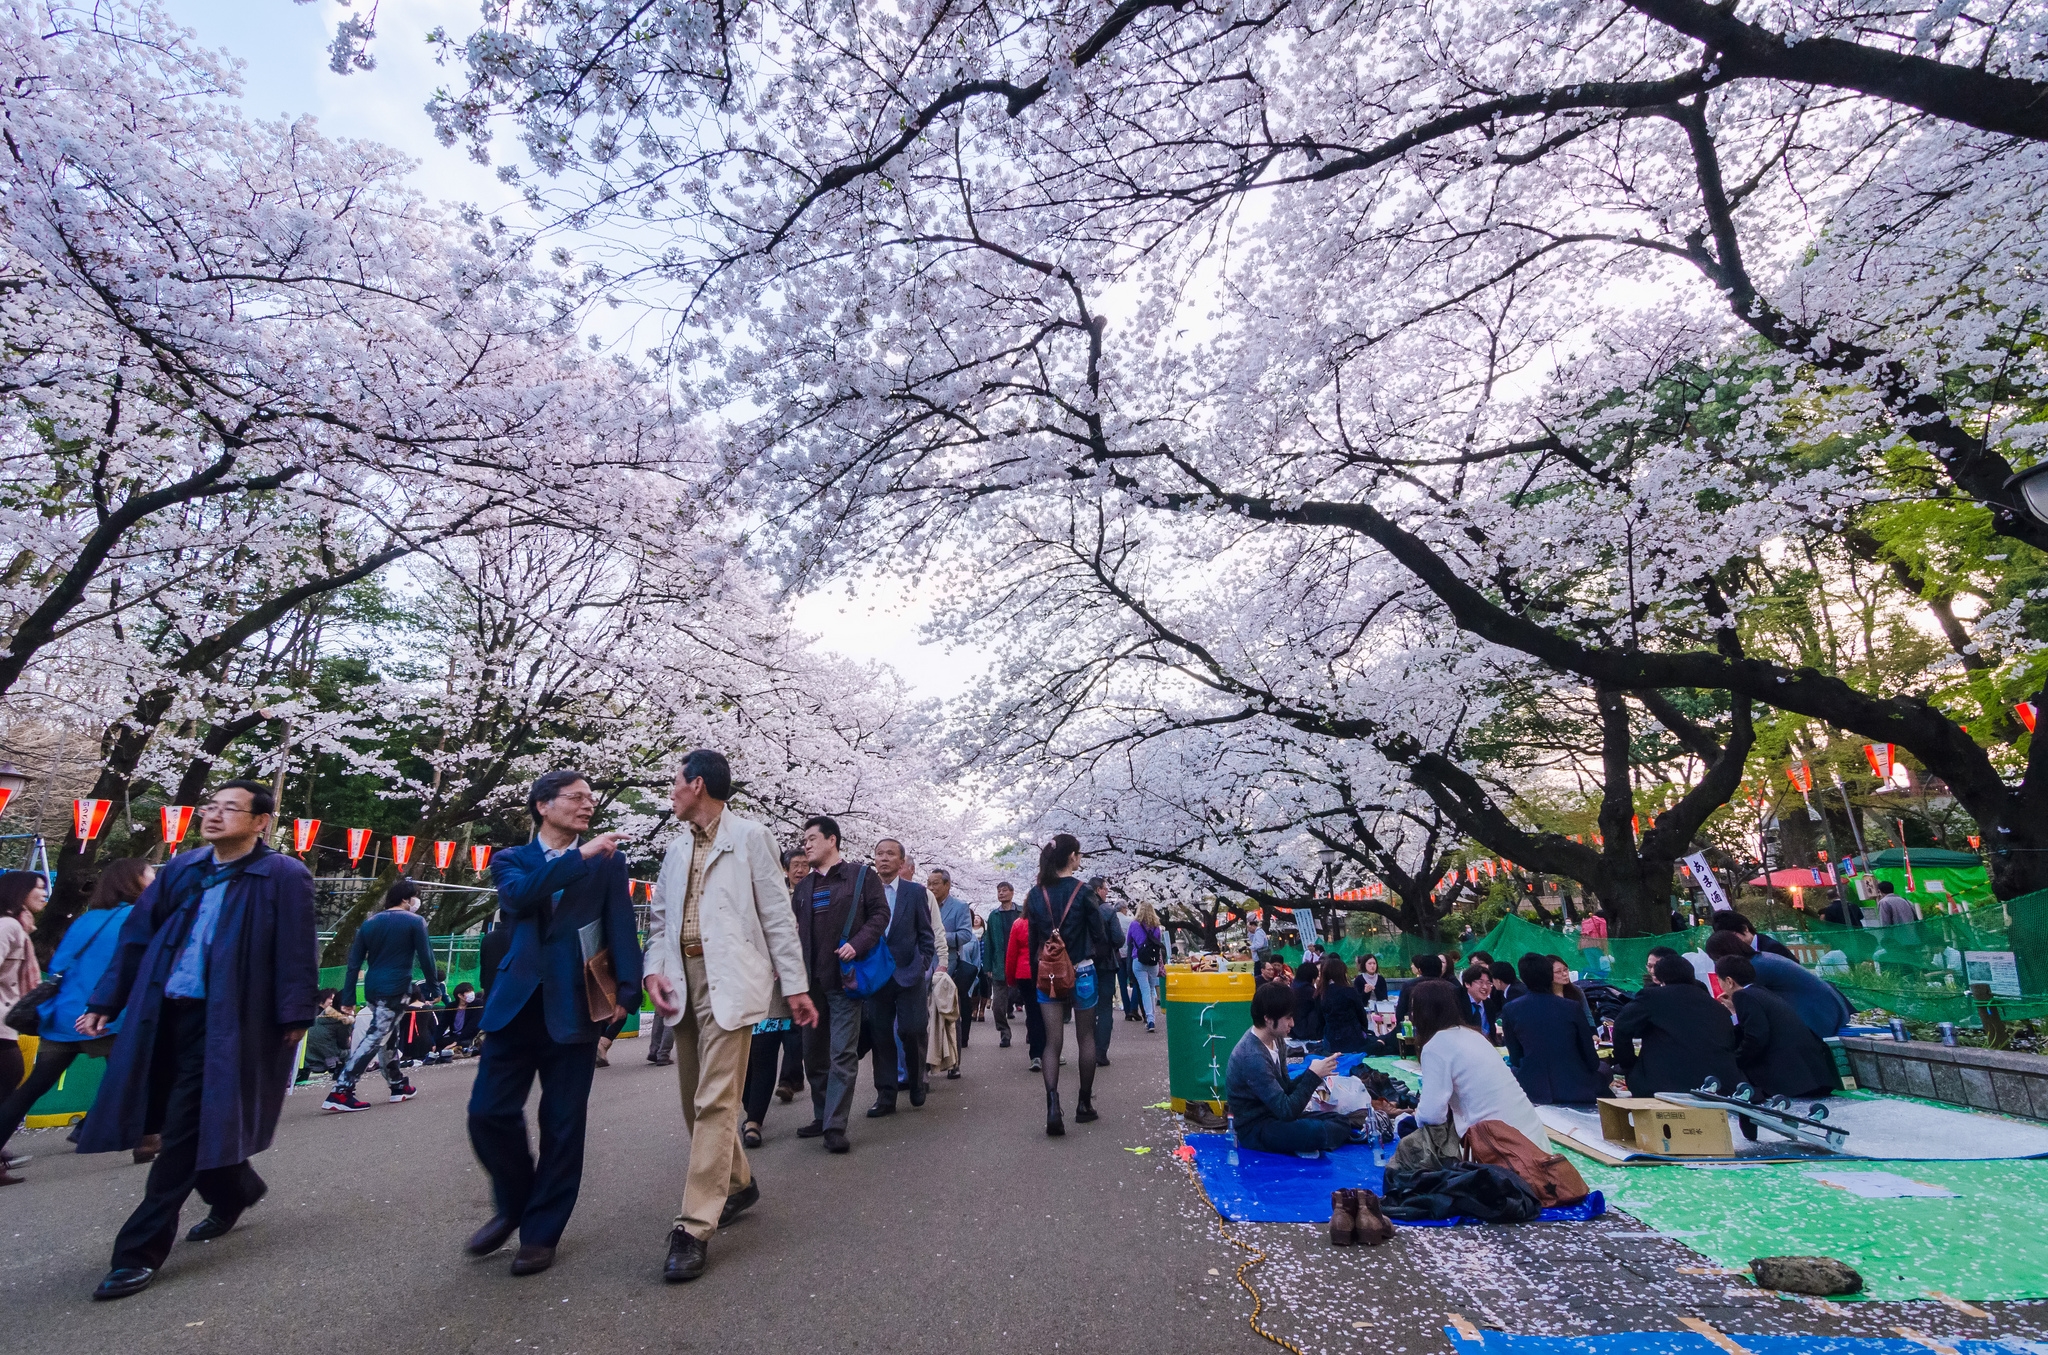 Mùa hoa anh đào đã về trên đất nước Nhật Bản và sớm nhất trong 70 năm qua